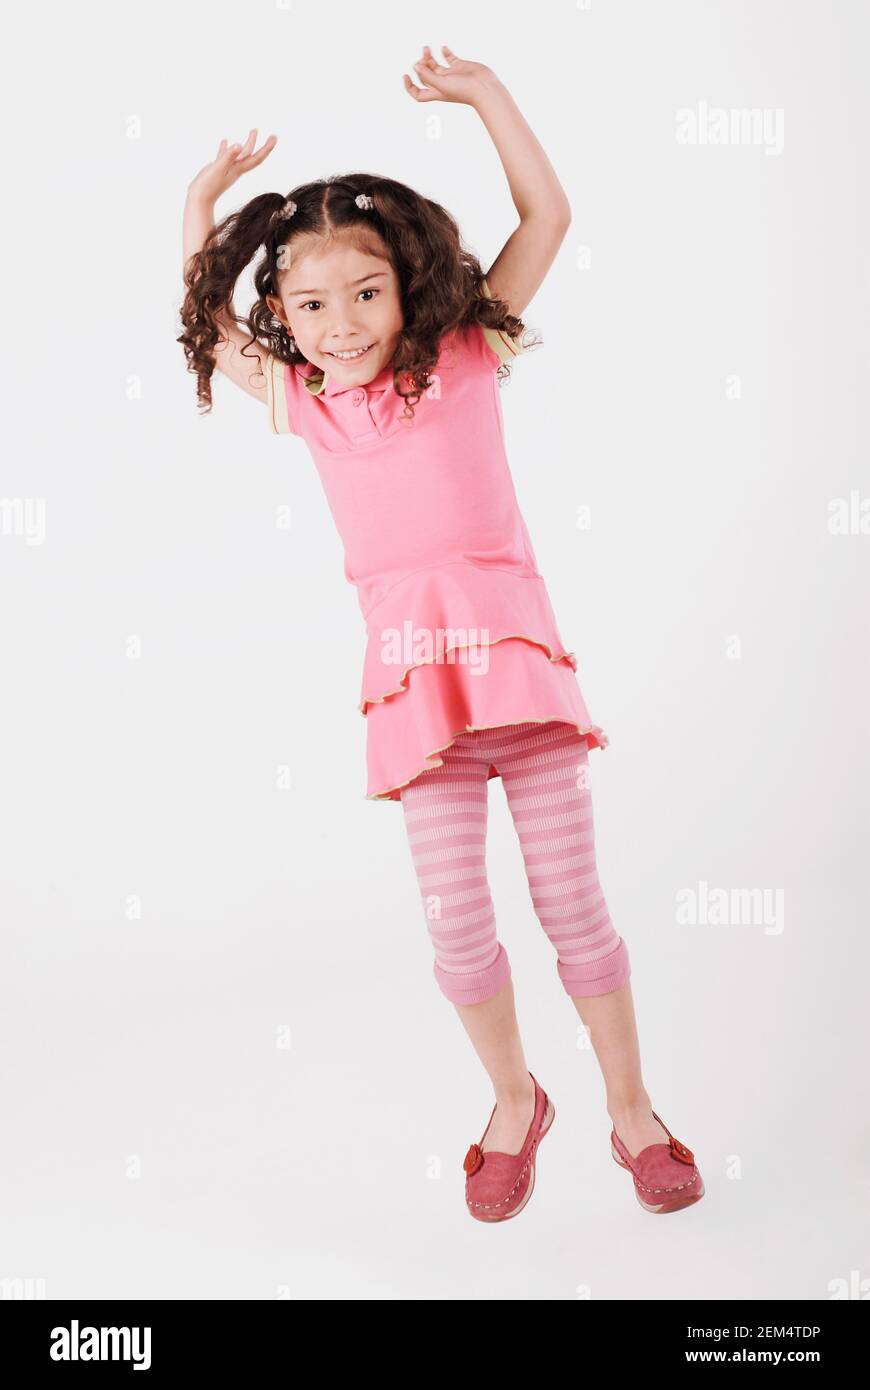 Portrait eines Mädchens, das mit erhobenen Armen springt und Lächelnd Stockfoto